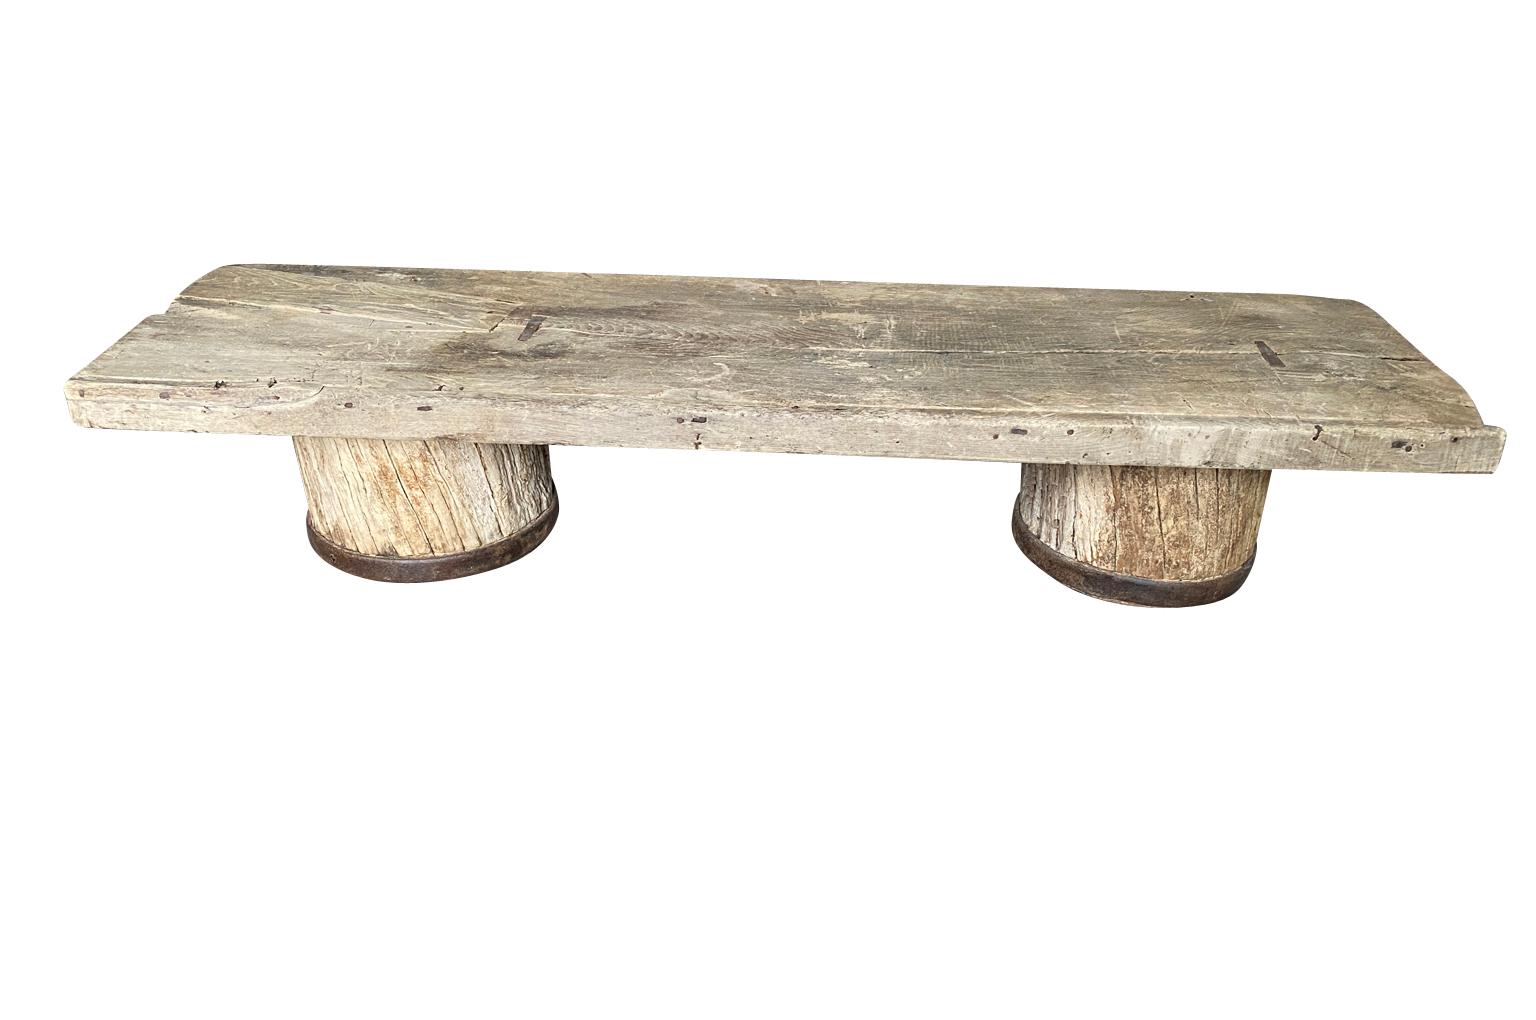 Ein sensationeller Table Basse - Couchtisch aus dem 18. Jahrhundert in Südfrankreich.  Wunderbar konstruiert aus einem schön patinierten Massivholzplateau und aus Säulen geschnittenen Beinen aus natürlich gewaschener Eiche mit Eisenbeschlägen.  Ein